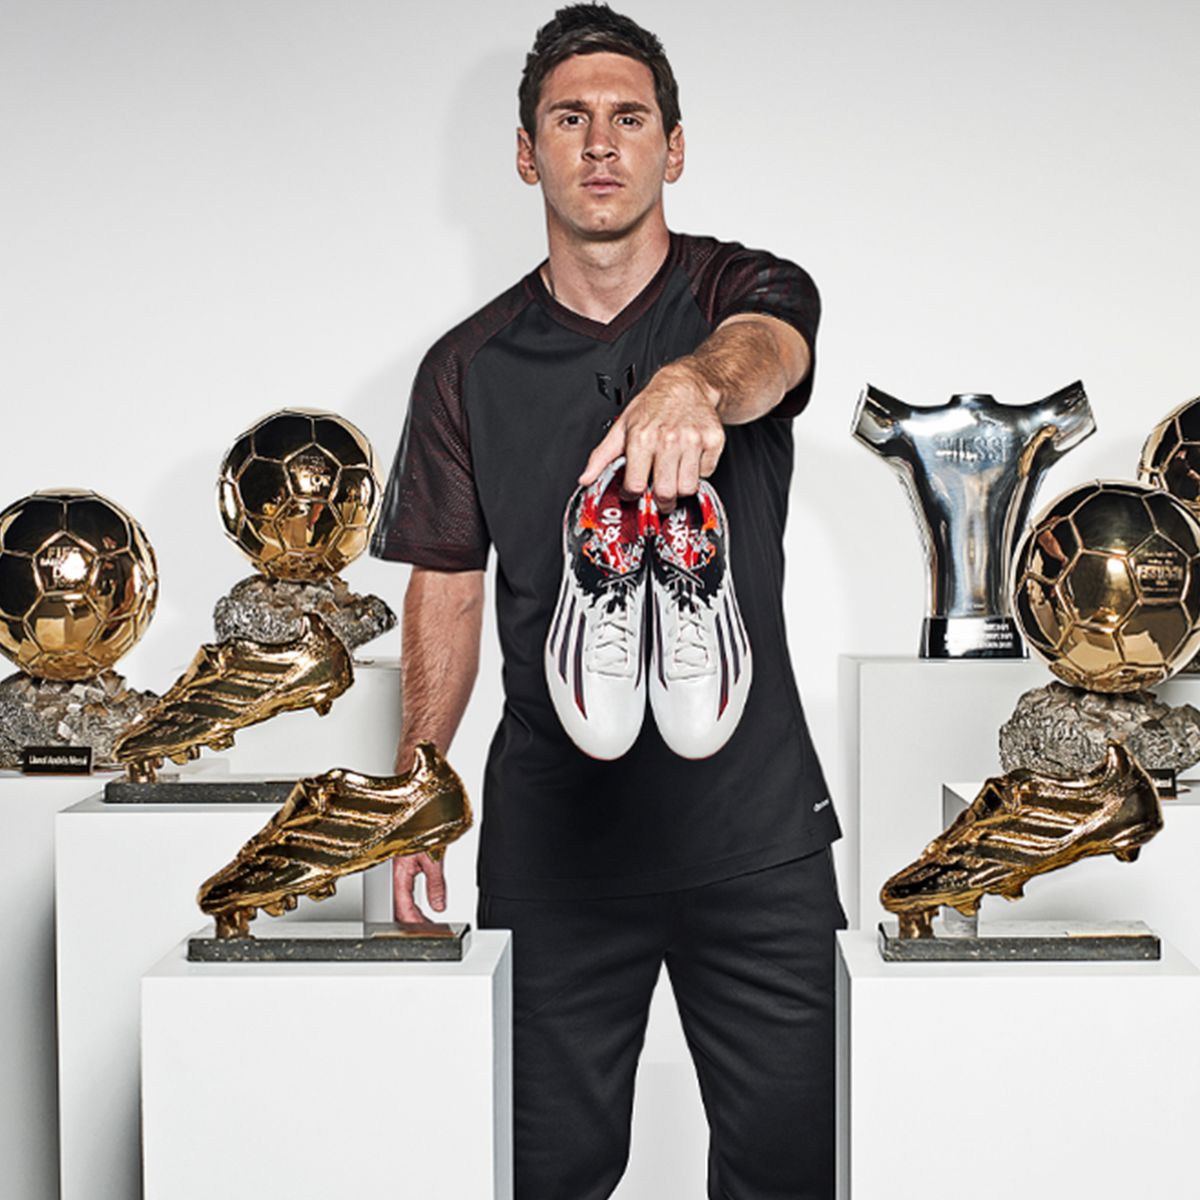 Adidas dévoile sa campagne de pub avec Messi - Eurosport